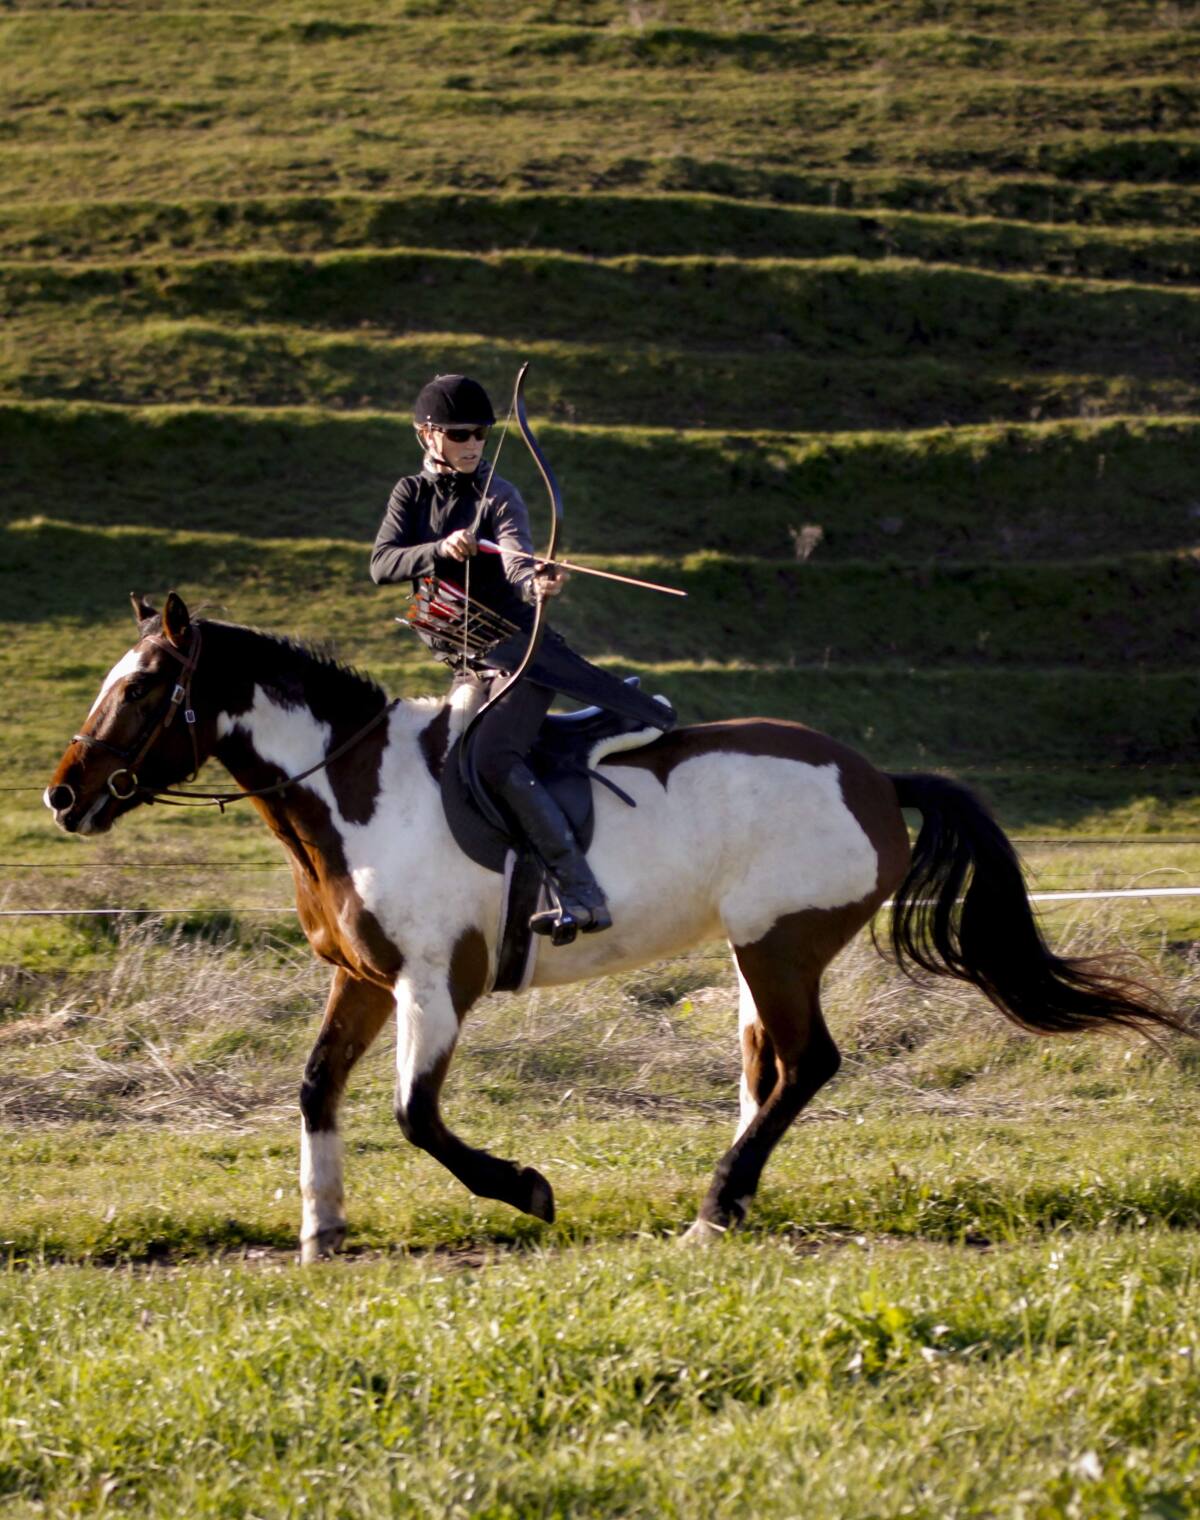 Meet our Ambassador: Hilary Merrill, Pro Horse Archer